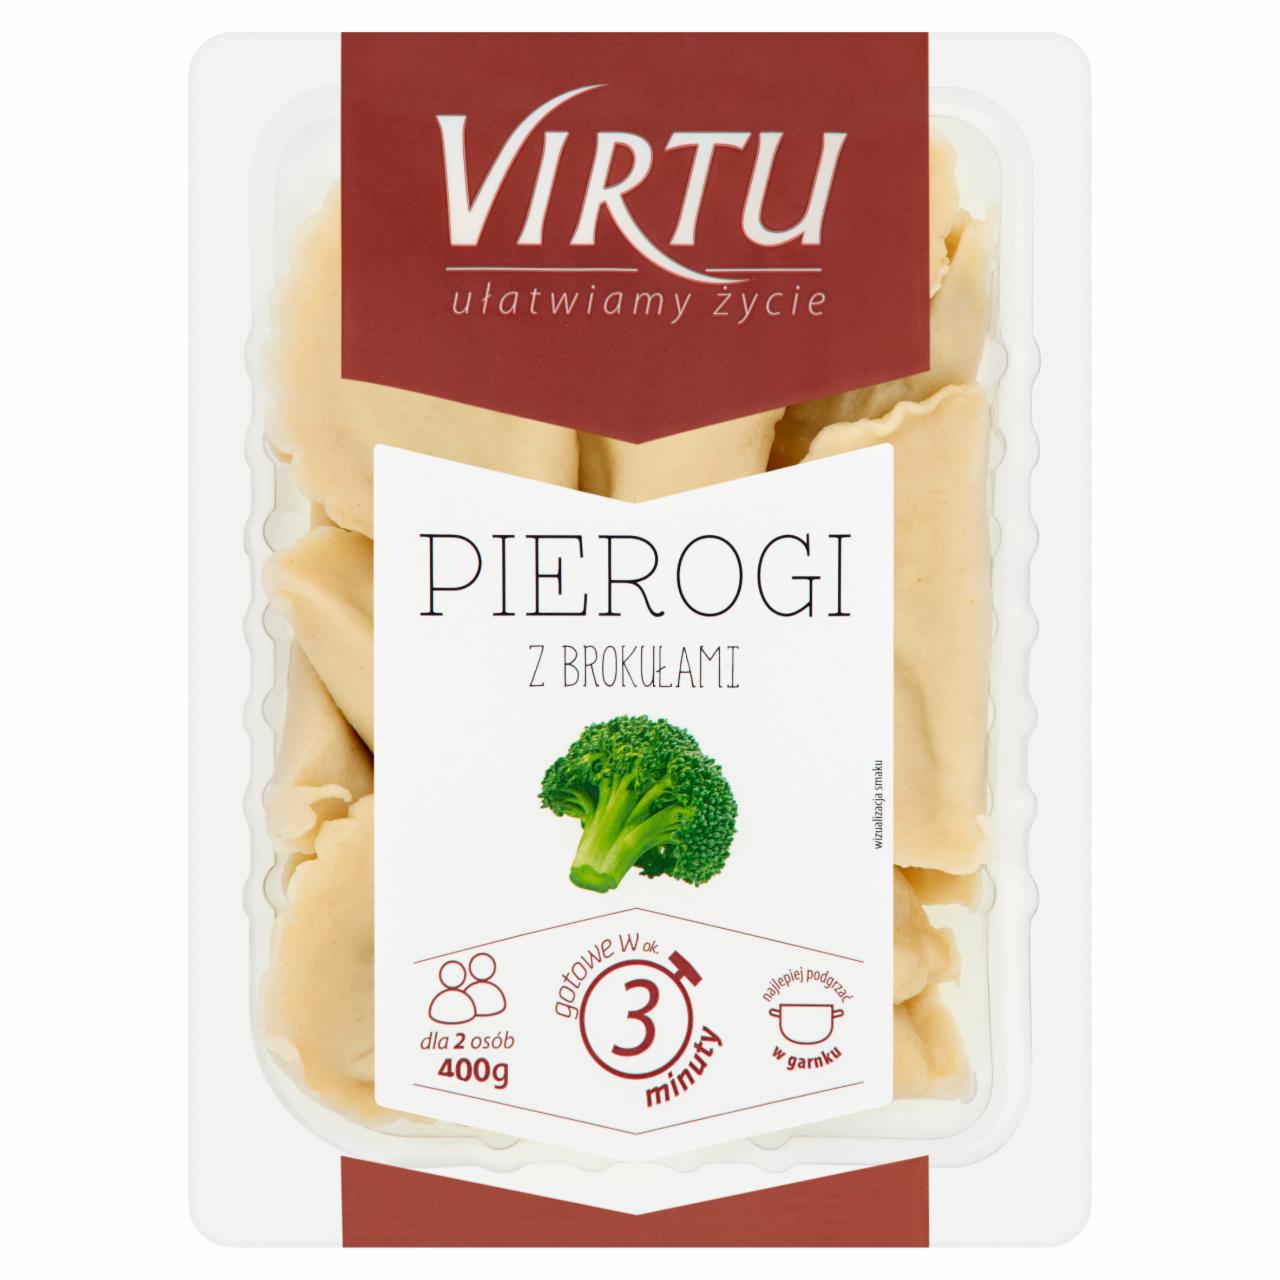 Zdjęcia - Virtu Pierogi z brokułami 400 g